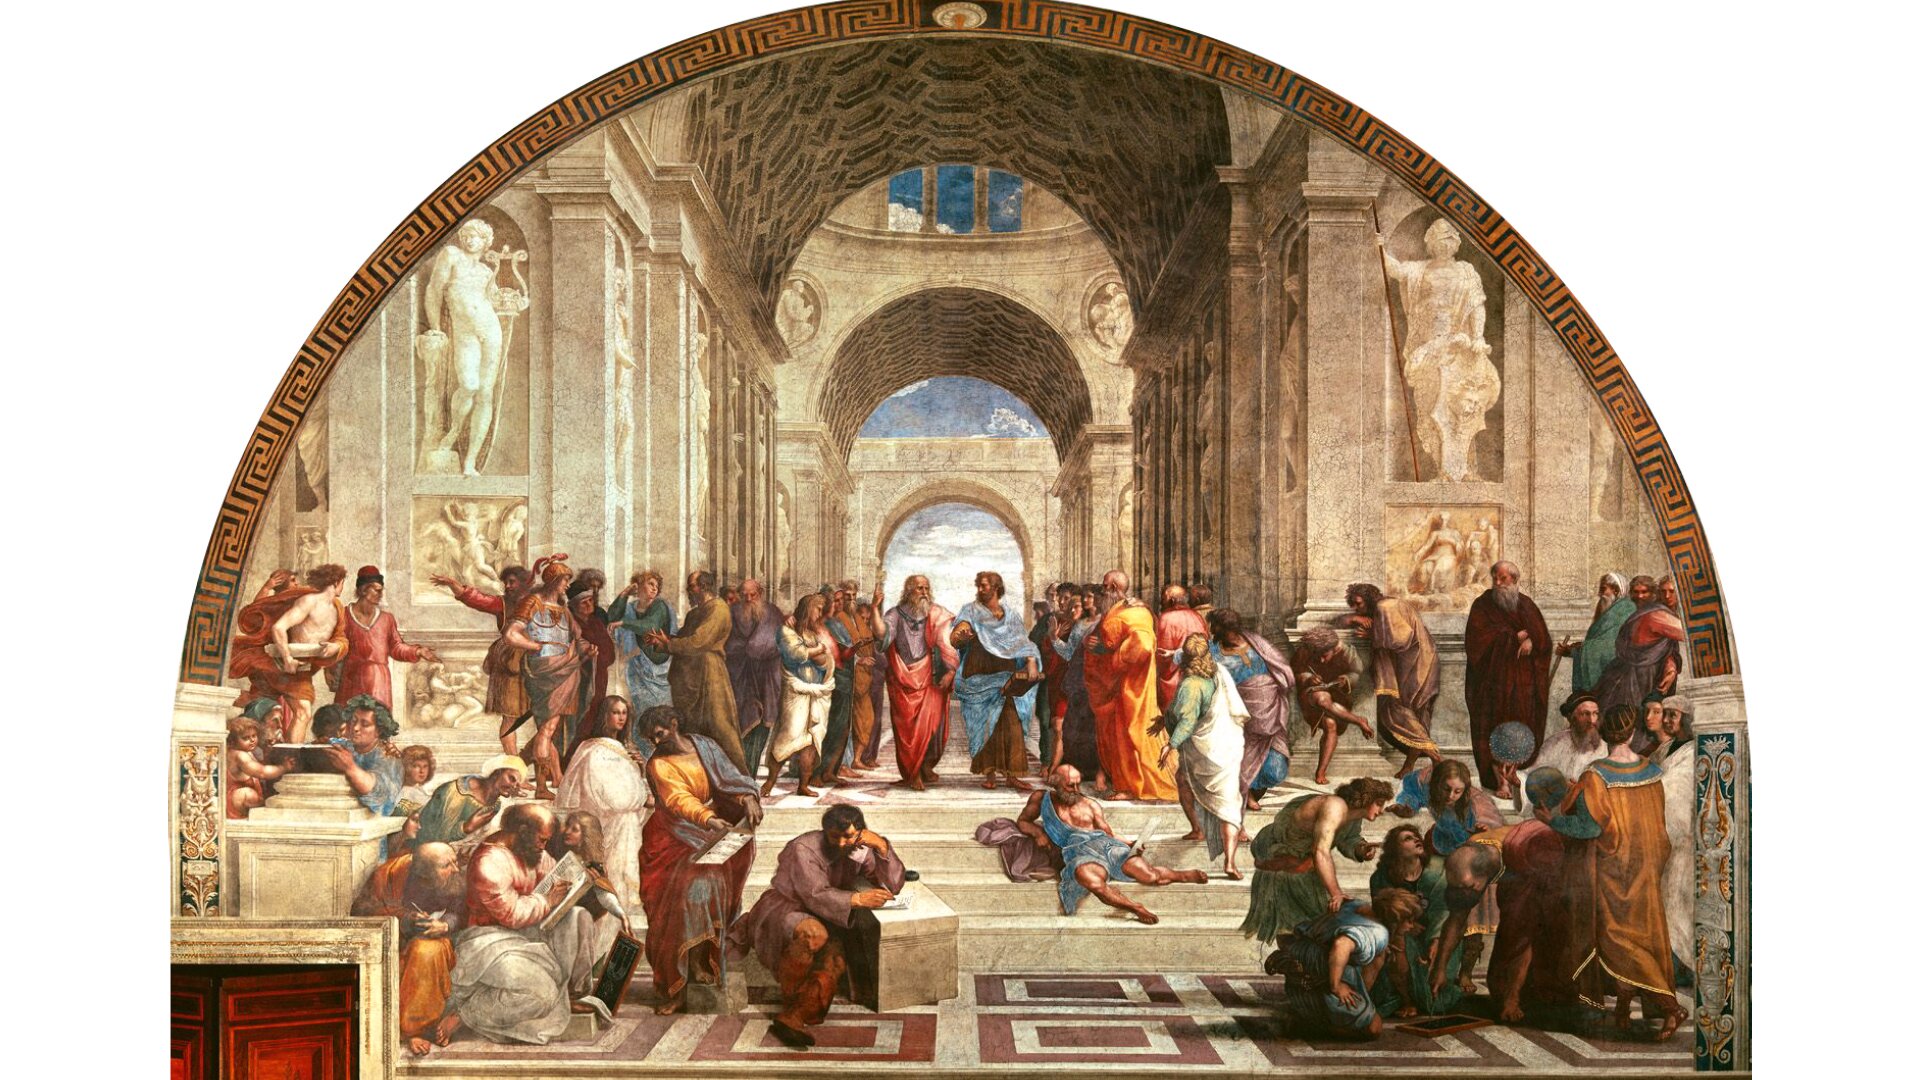 Obraz pt. „Szkoła ateńska” przedstawia zgromadzenie ludzi w budowli składającej się z łuków. W centrum znajdują się Platon i Arystoteles.